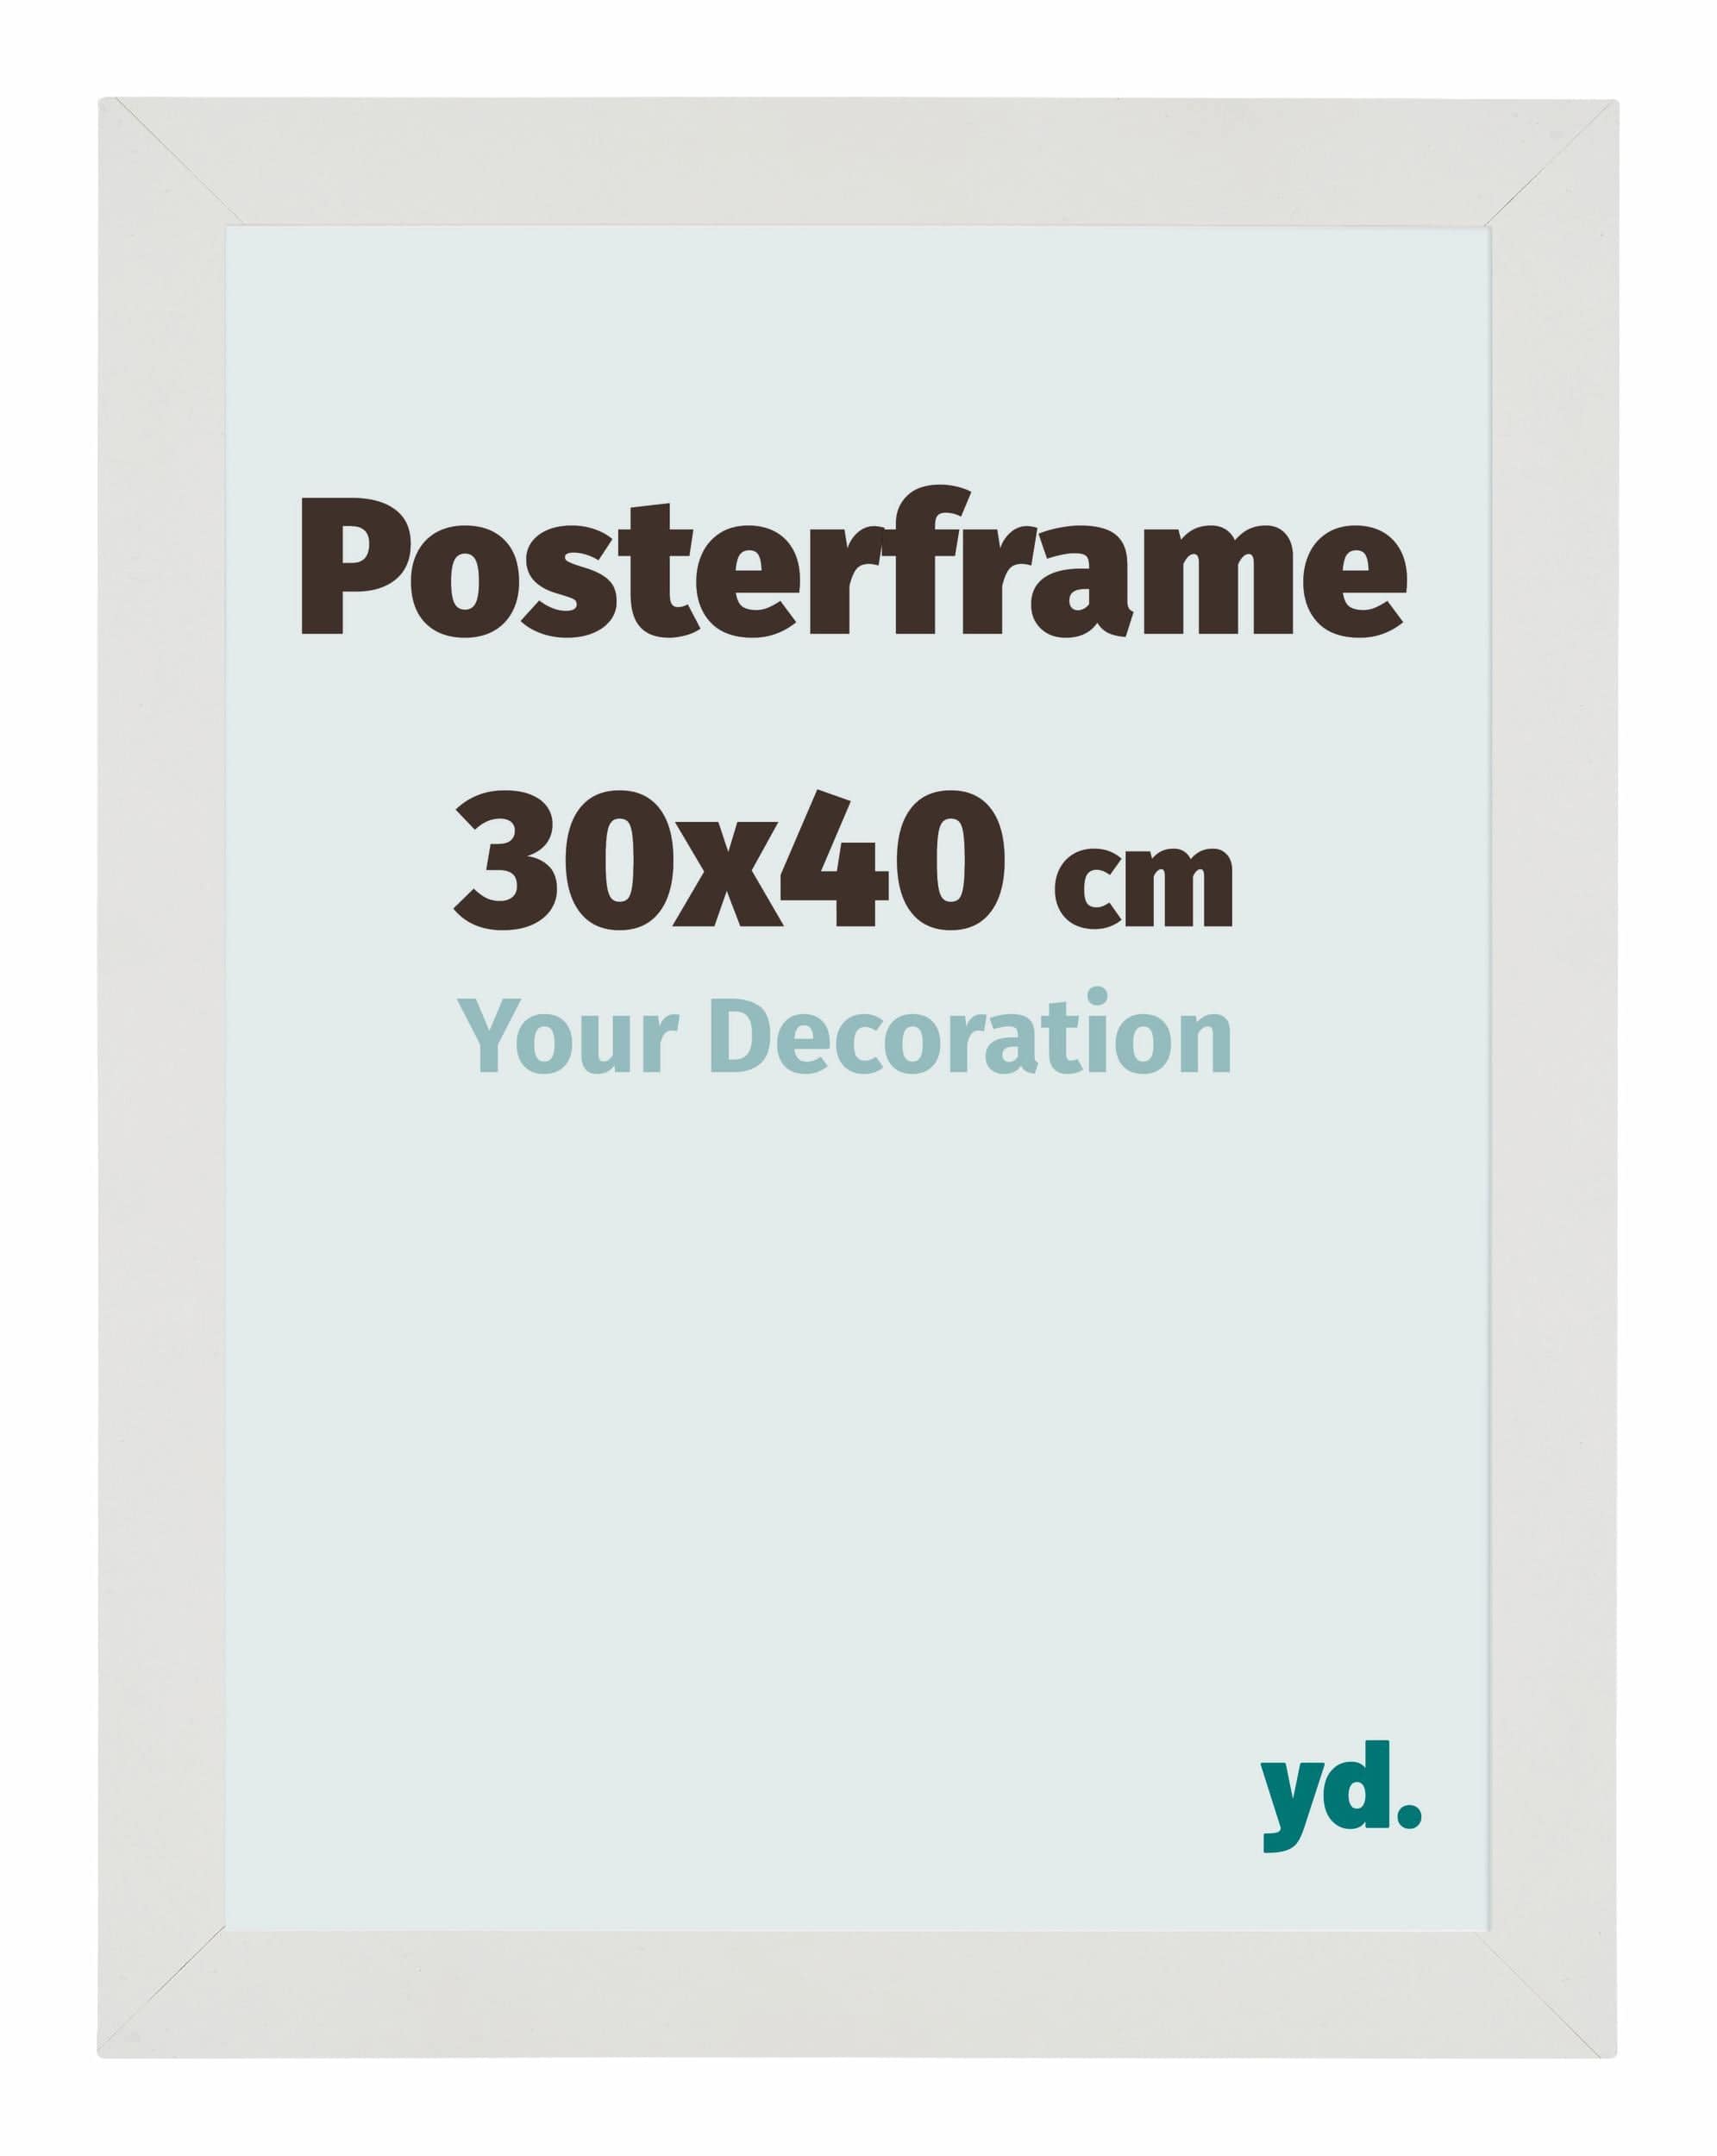 40 x 30 poster frame